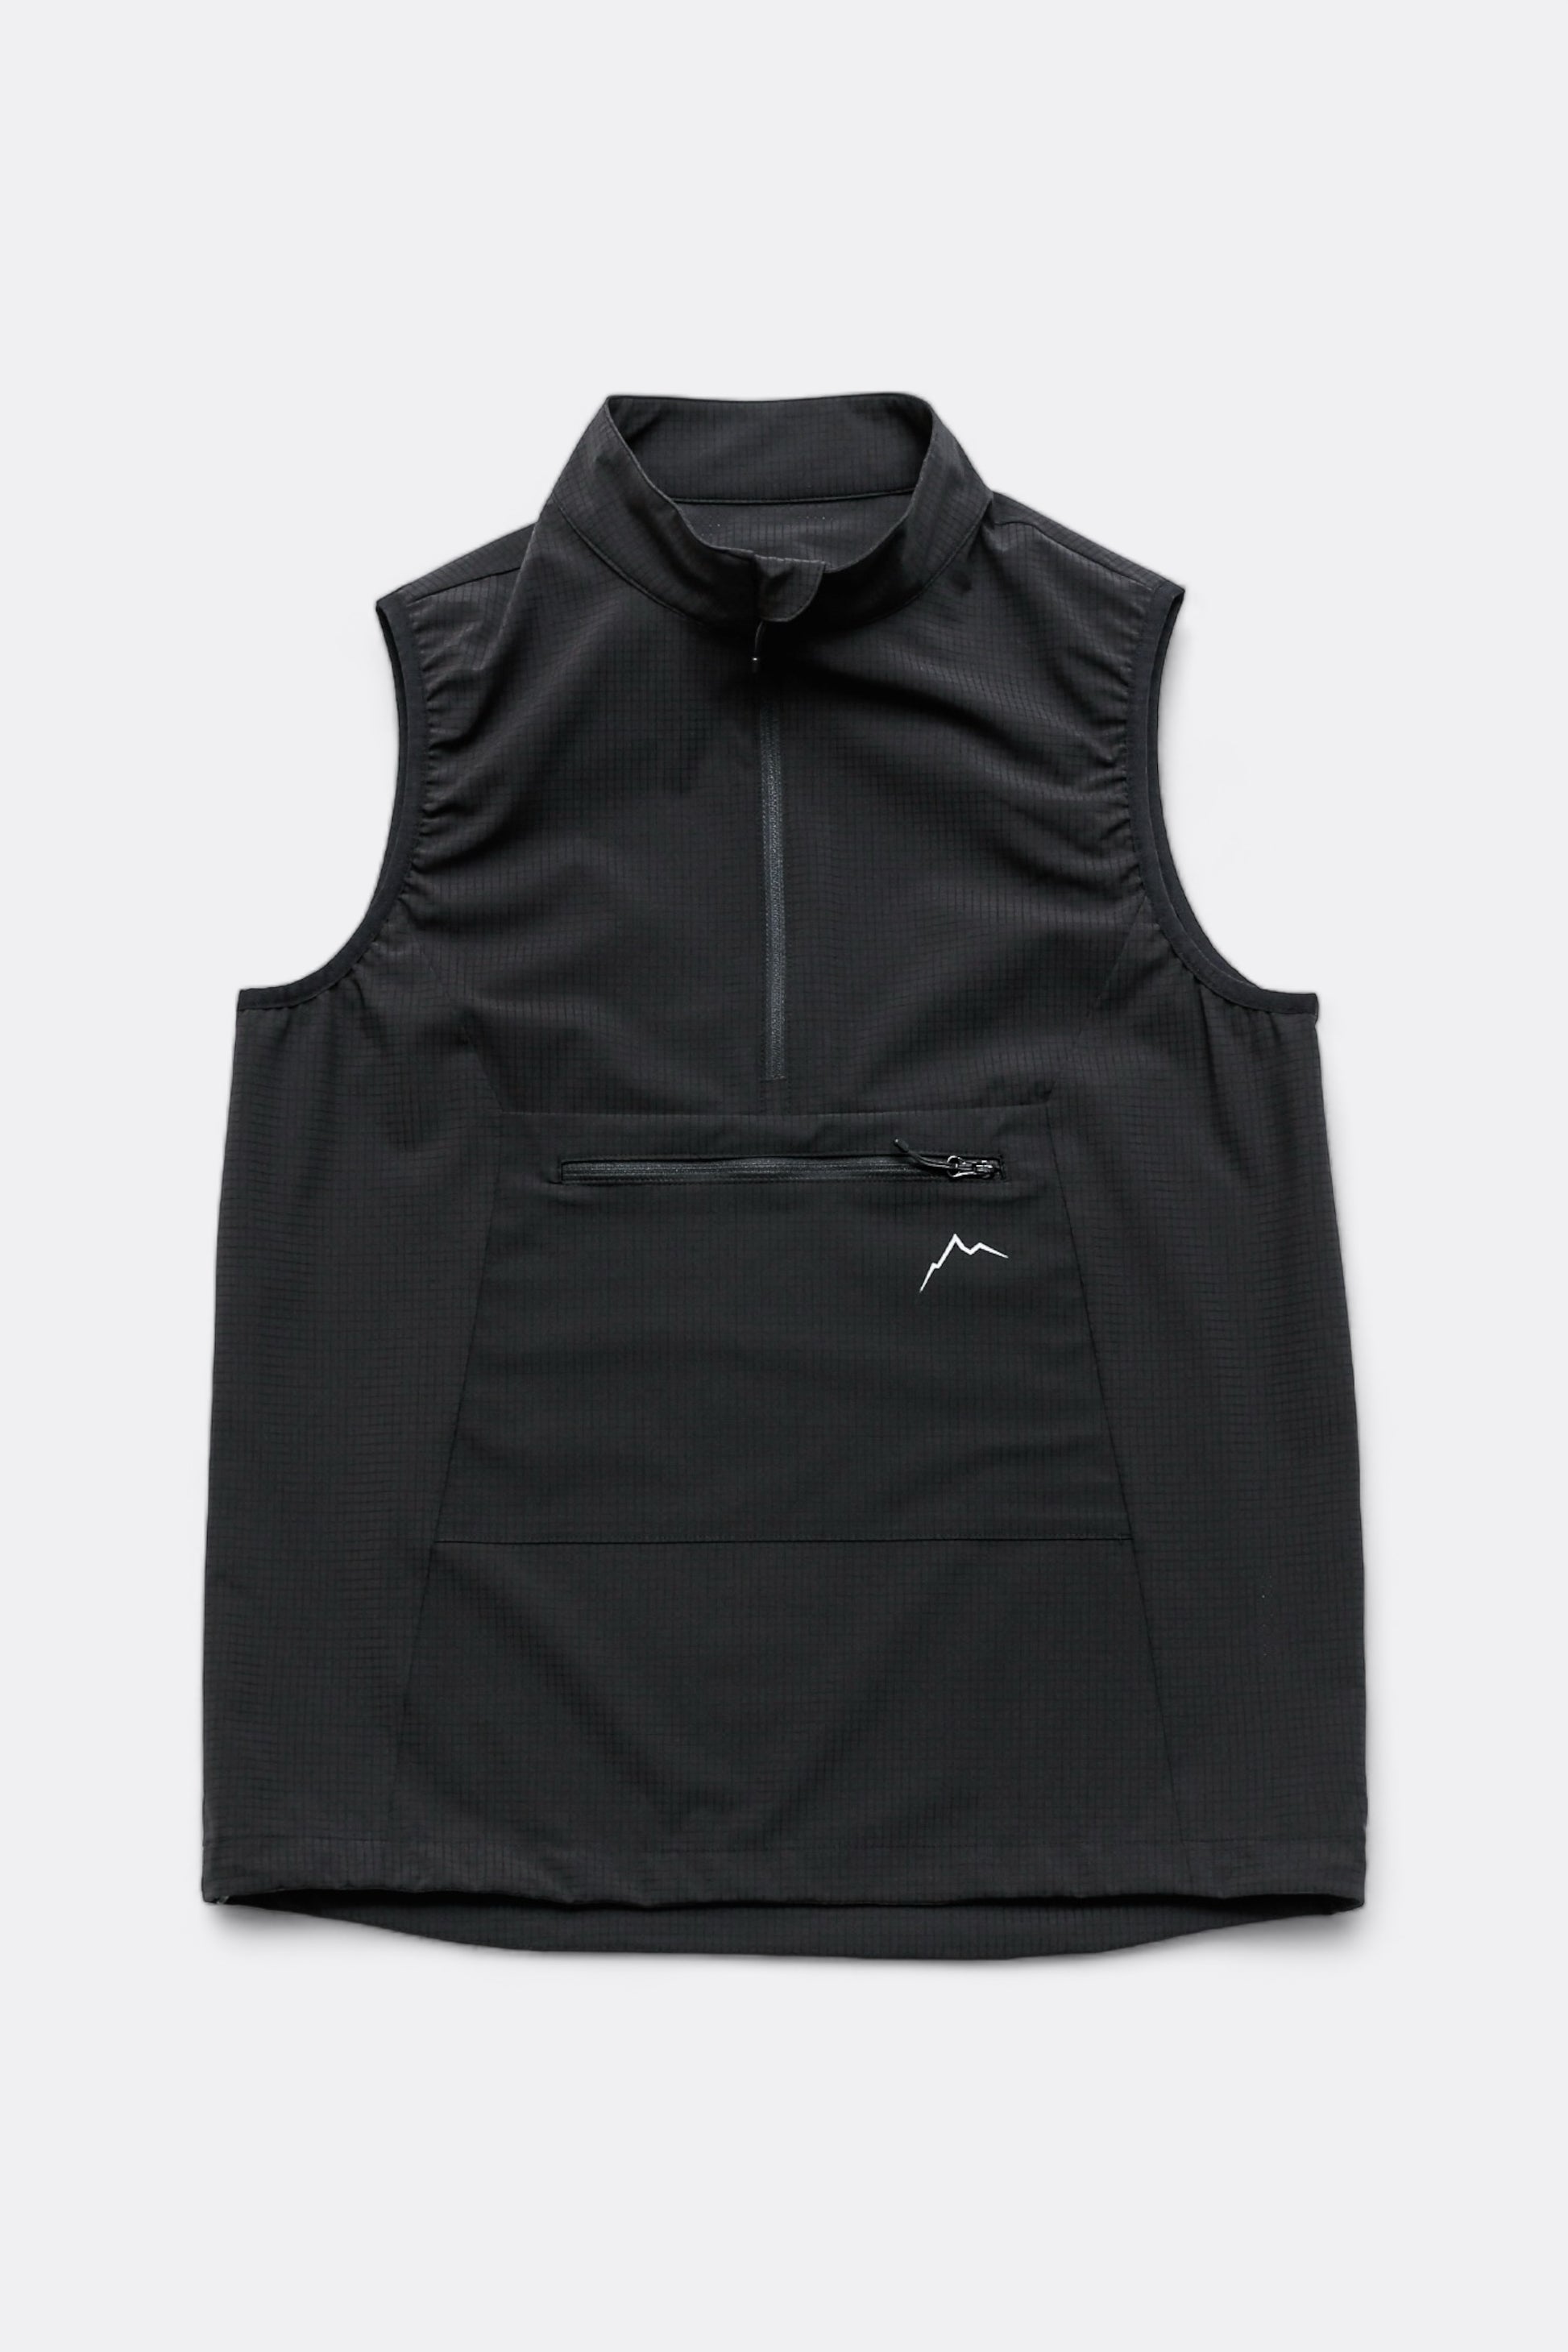 Cayl - Flow Pullover Vest (Black)